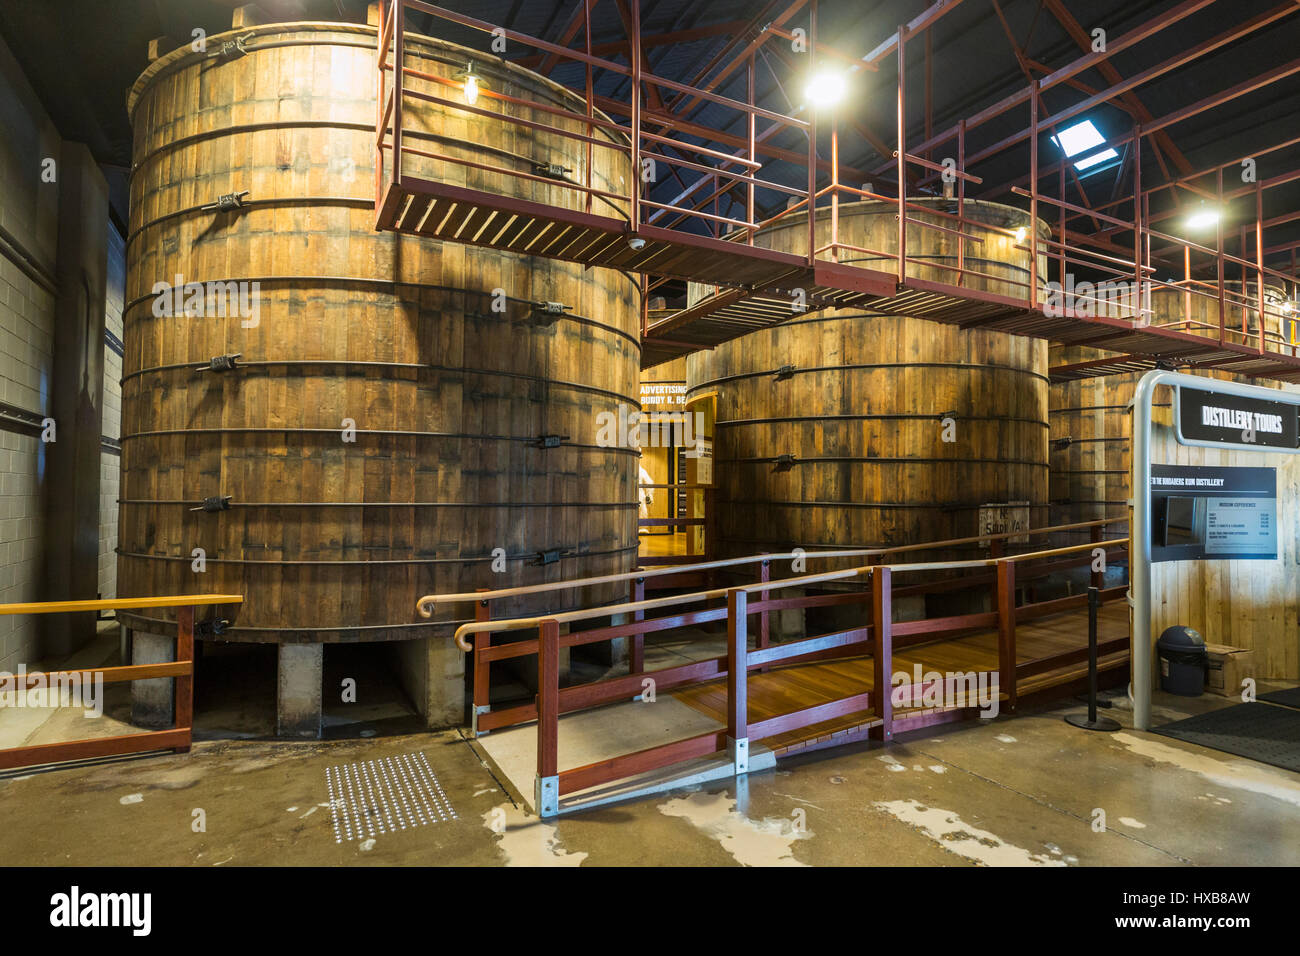 Rum Lagerung Bottiche in Exponate in Bundaberg Rum Destillerie Besucherzentrum umgewandelt.  Bundaberg, Queensland, Australien Stockfoto